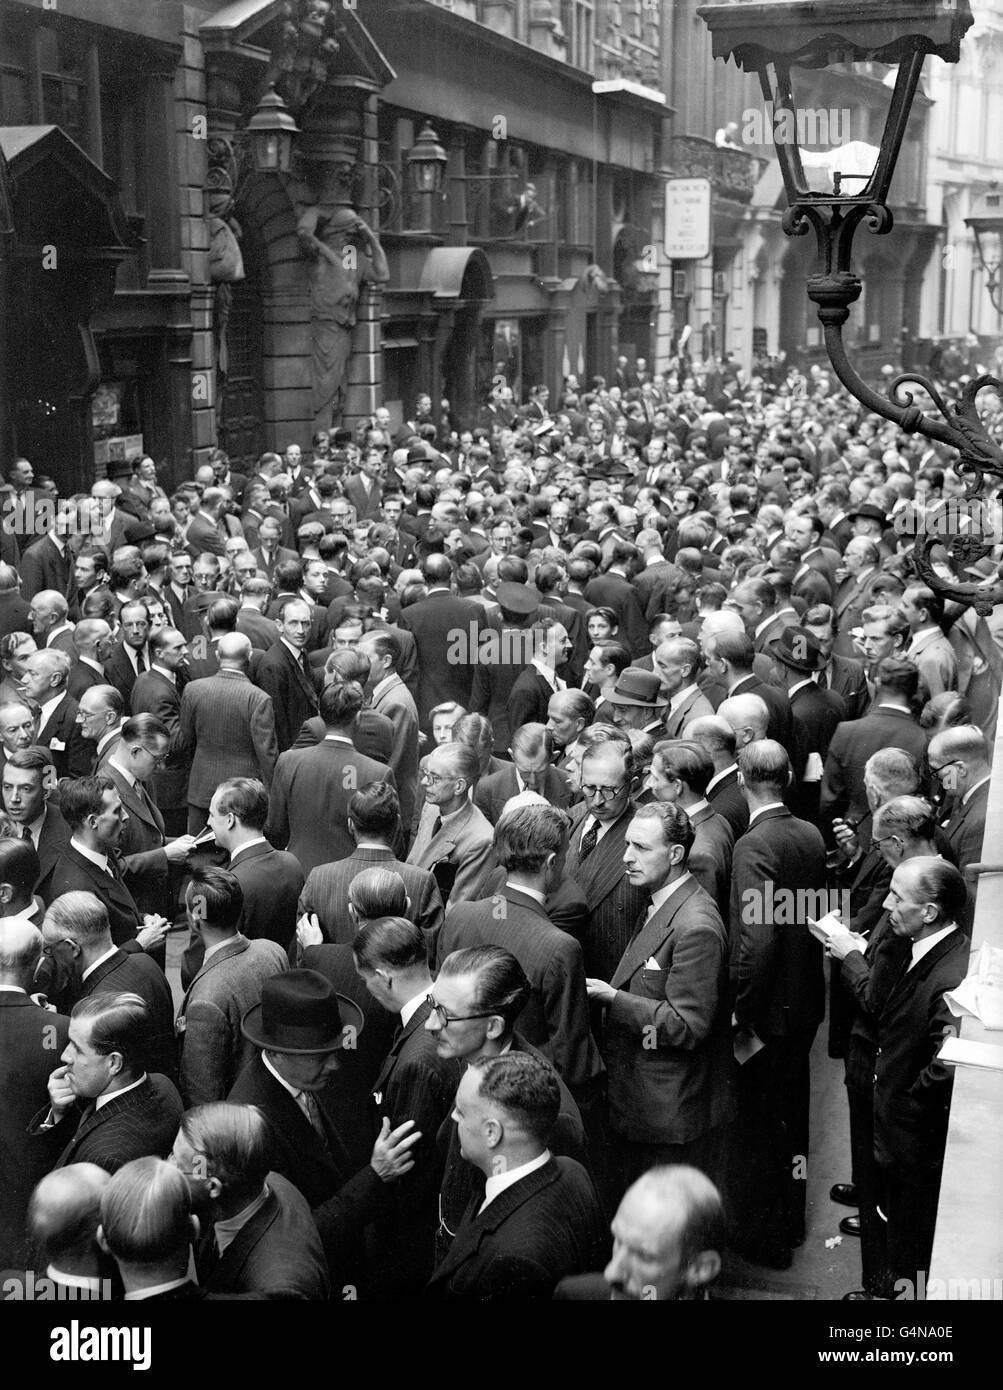 La folla enorme in Throgmorton Street, Londra, come migliaia di broker e di persone di lavoro affollato al di fuori delle porte chiuse della Borsa nel più grande mercato 'treet' mai visto. La corsa a formare mercati 'non ufficiali' seguì la svalutazione della sterlina e un annuncio reale che chiudeva le banche e le borse per il giorno Foto Stock